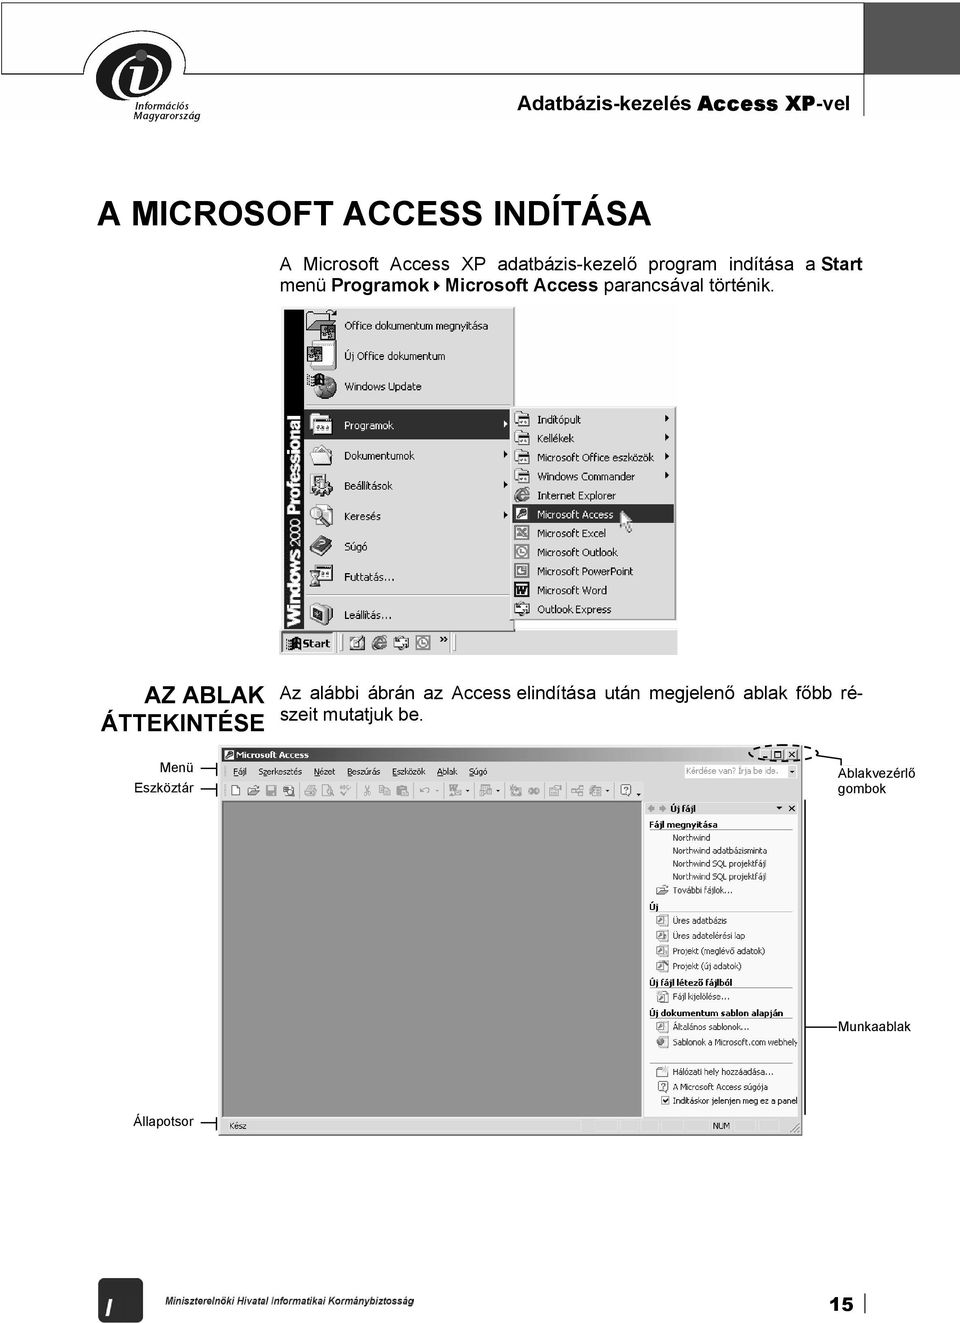 Adatbázis-kezelés Access XP-vel. Tananyag - PDF Ingyenes letöltés